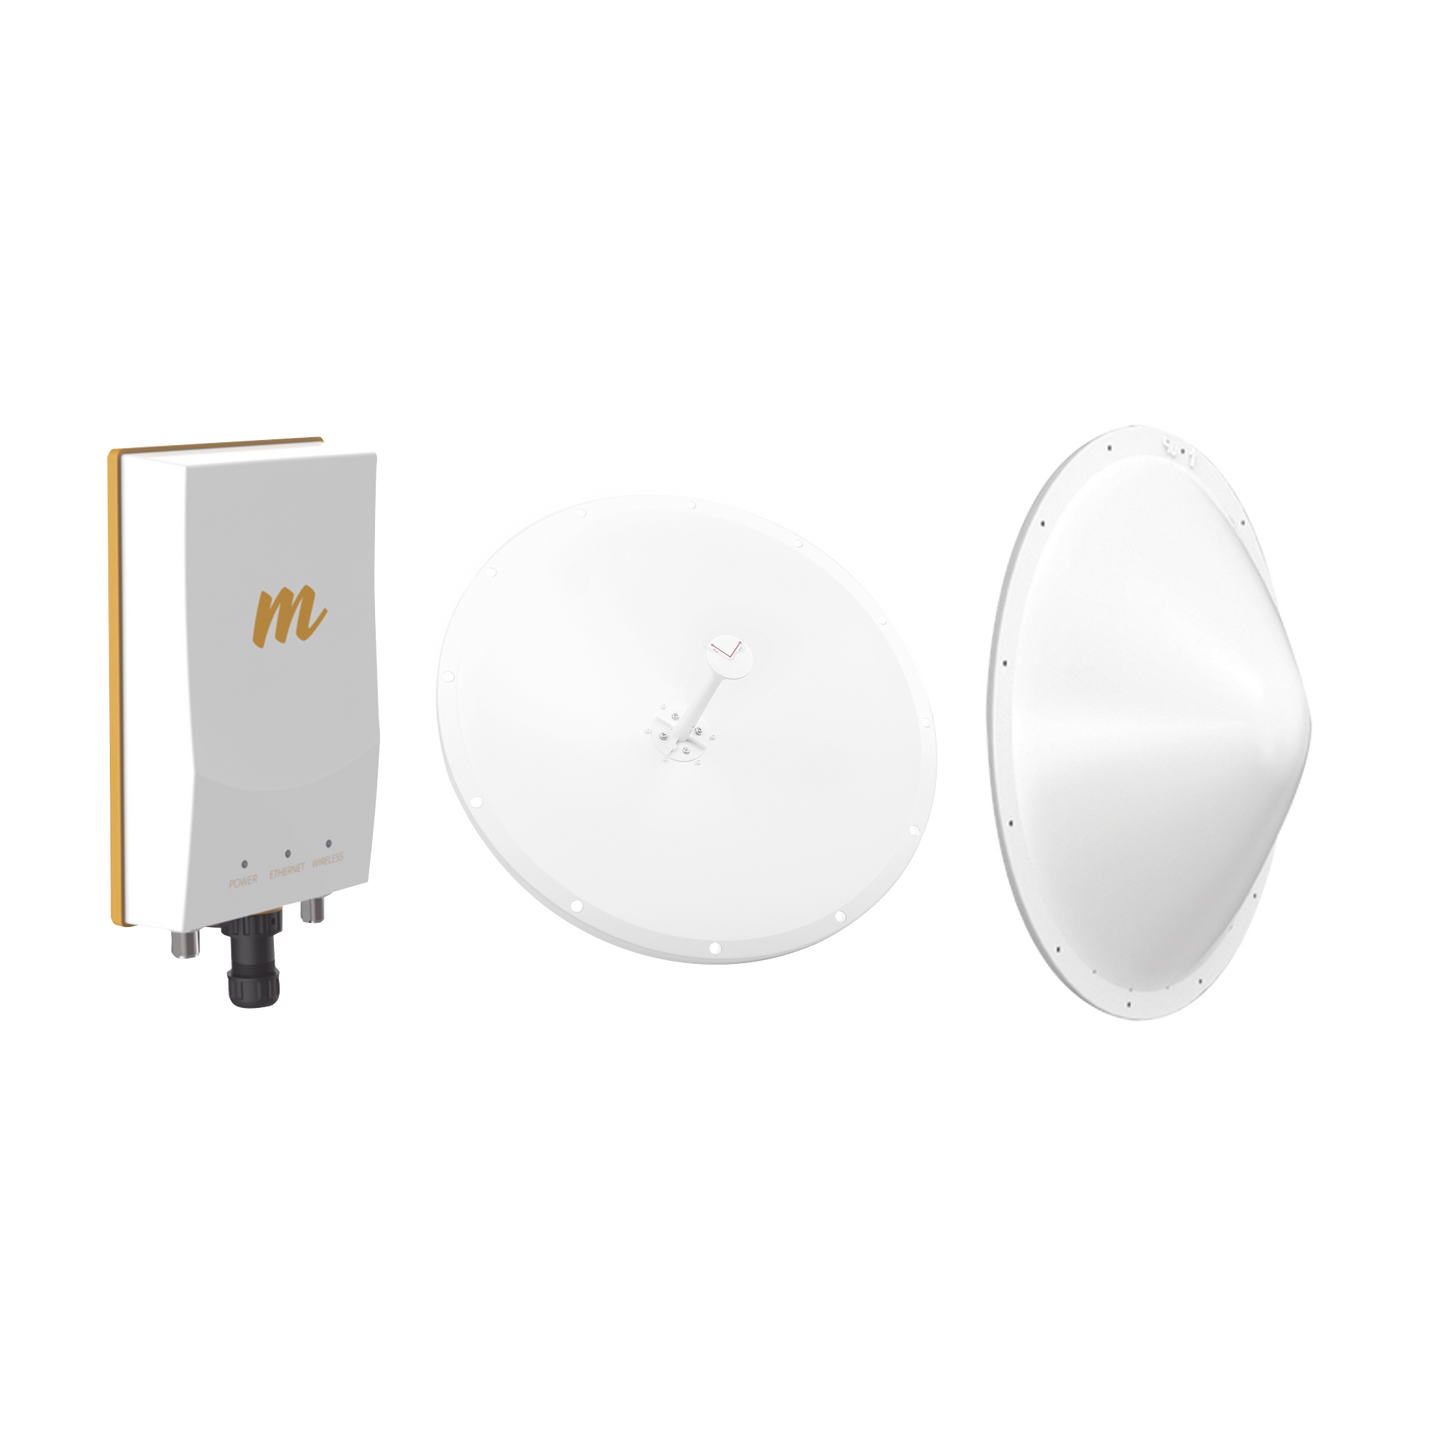 Kit de radio B5c con antena de 28 dBi , Frecuencia (4.9-6.5 GHz), incluye jumper y radomo, ideal para distancias de hasta 20km